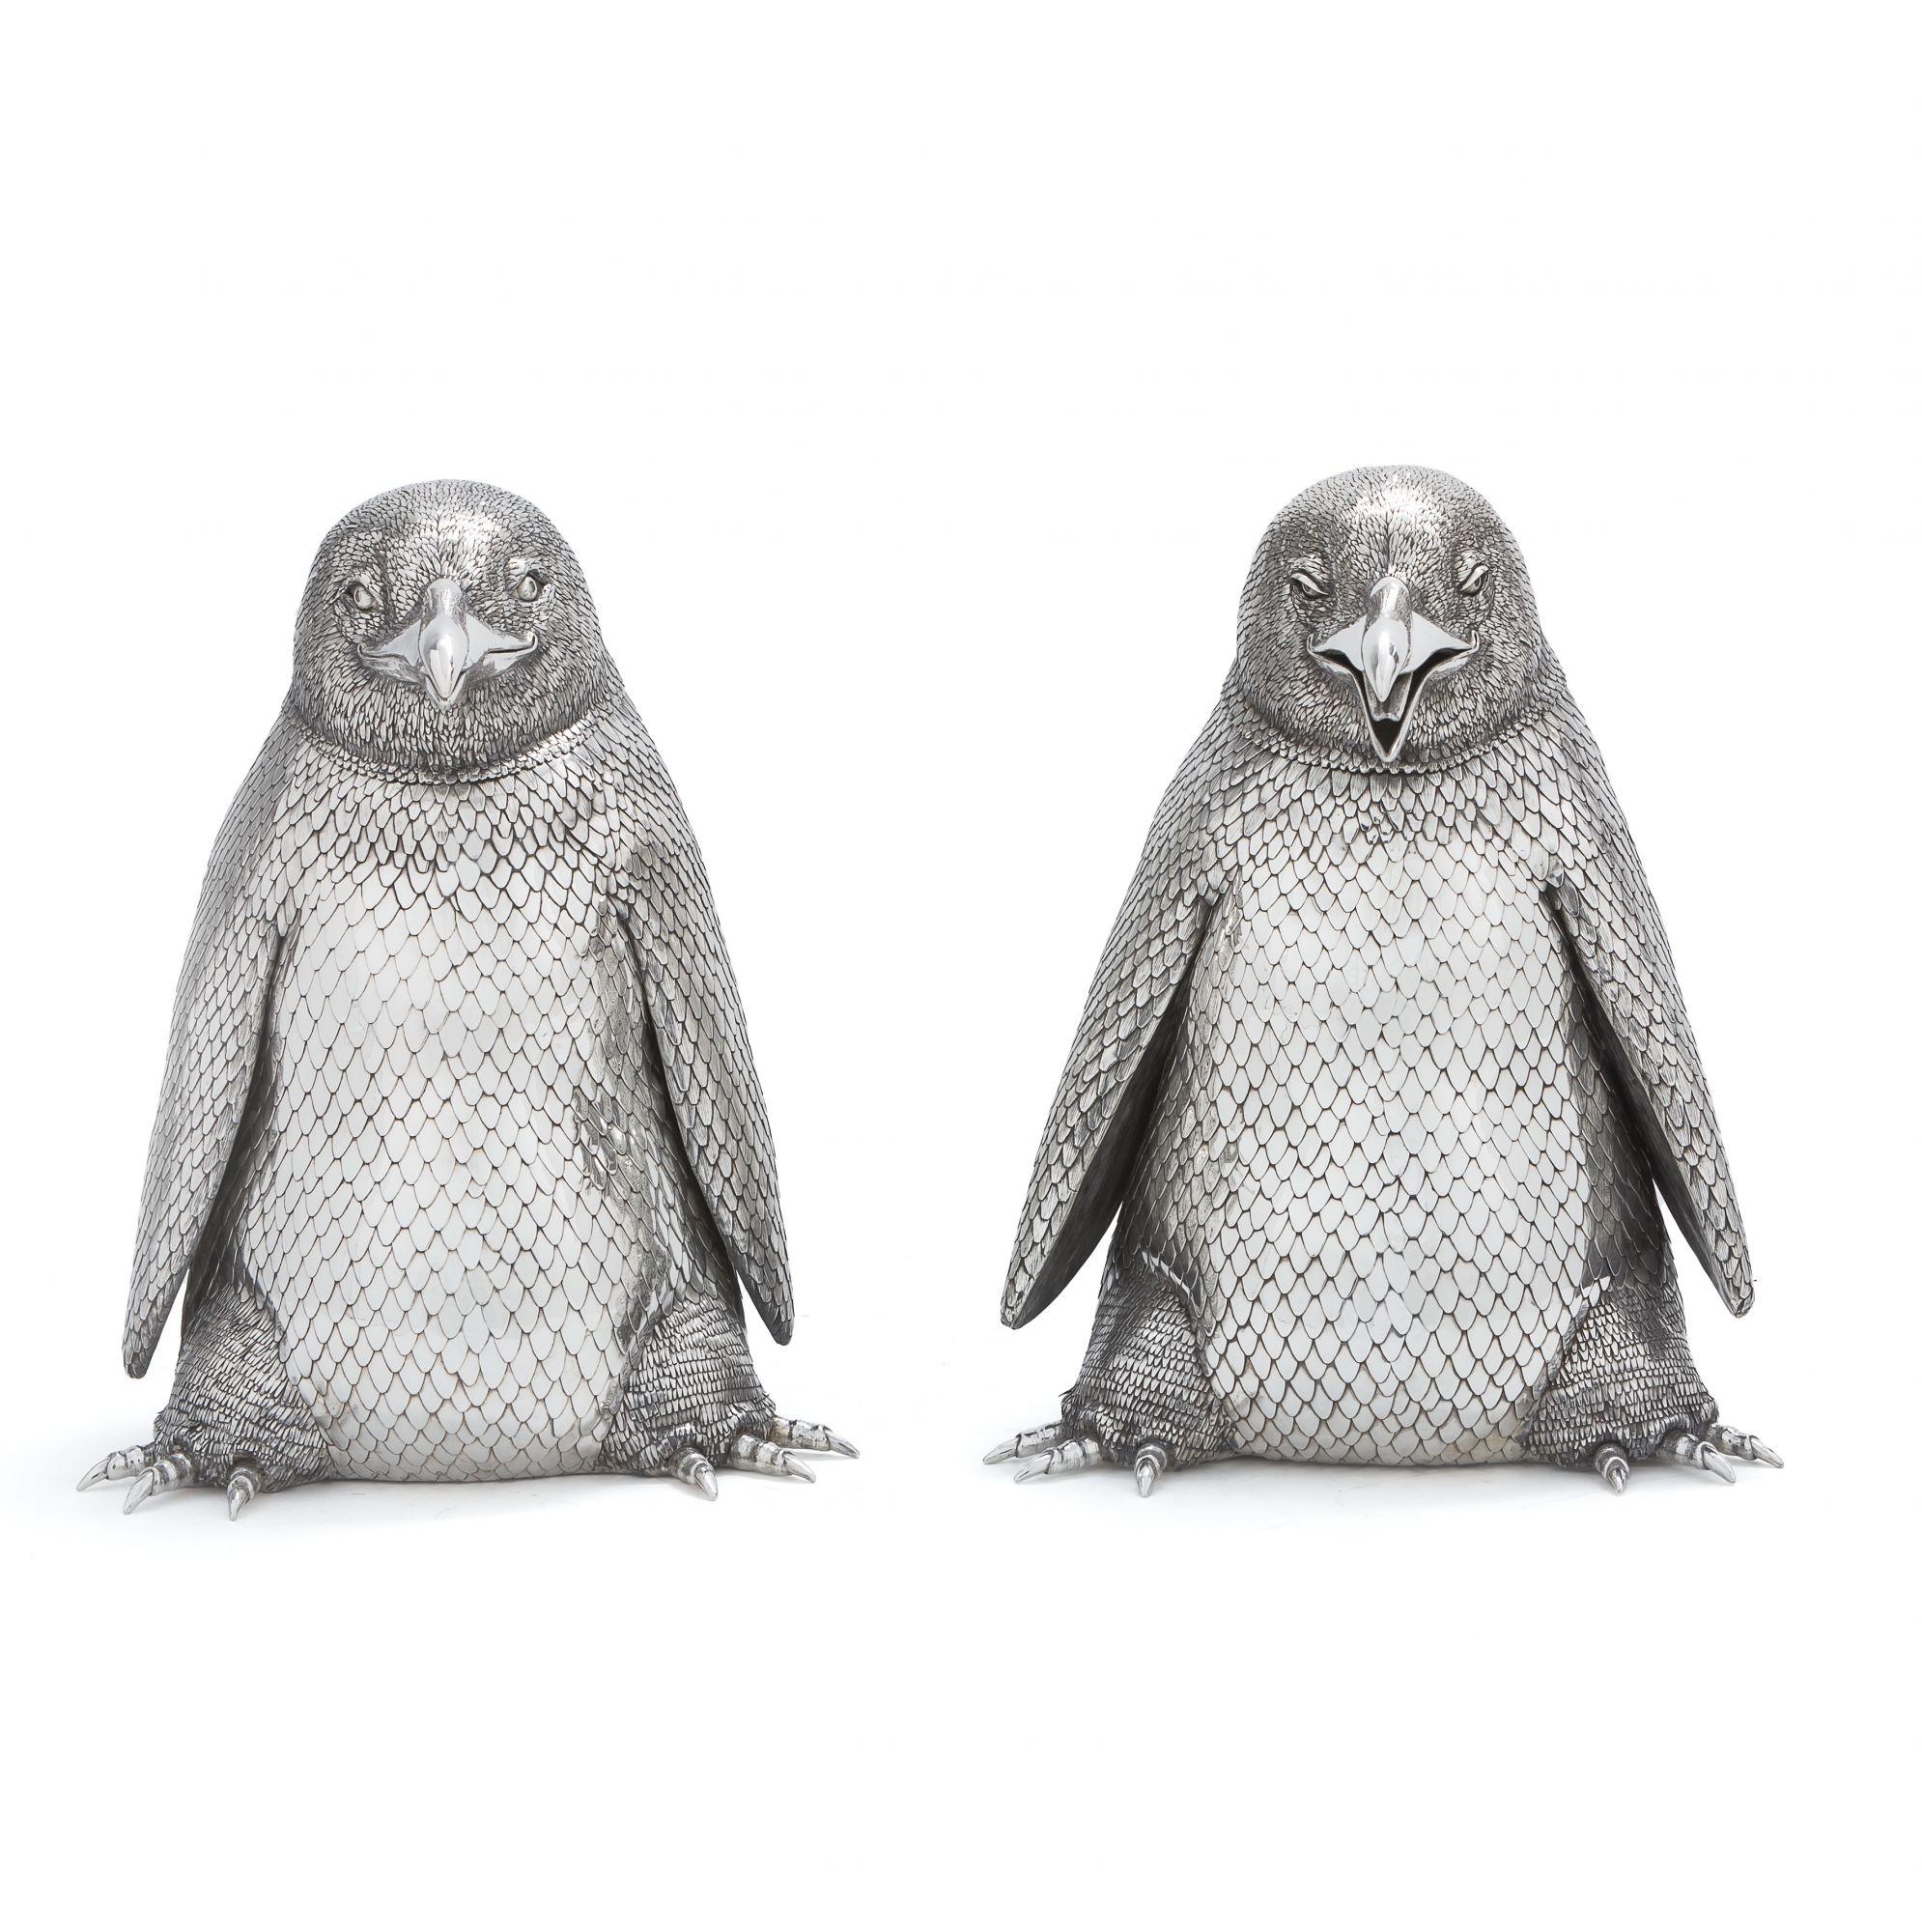 Une paire de pingouins modélisés de façon réaliste en tant que mâle et femelle, les têtes à charnière s'ouvrant pour révéler un compartiment à bouteille Mario Buccellati était l'un des plus remarquables joailliers italiens du 20e siècle. Ses